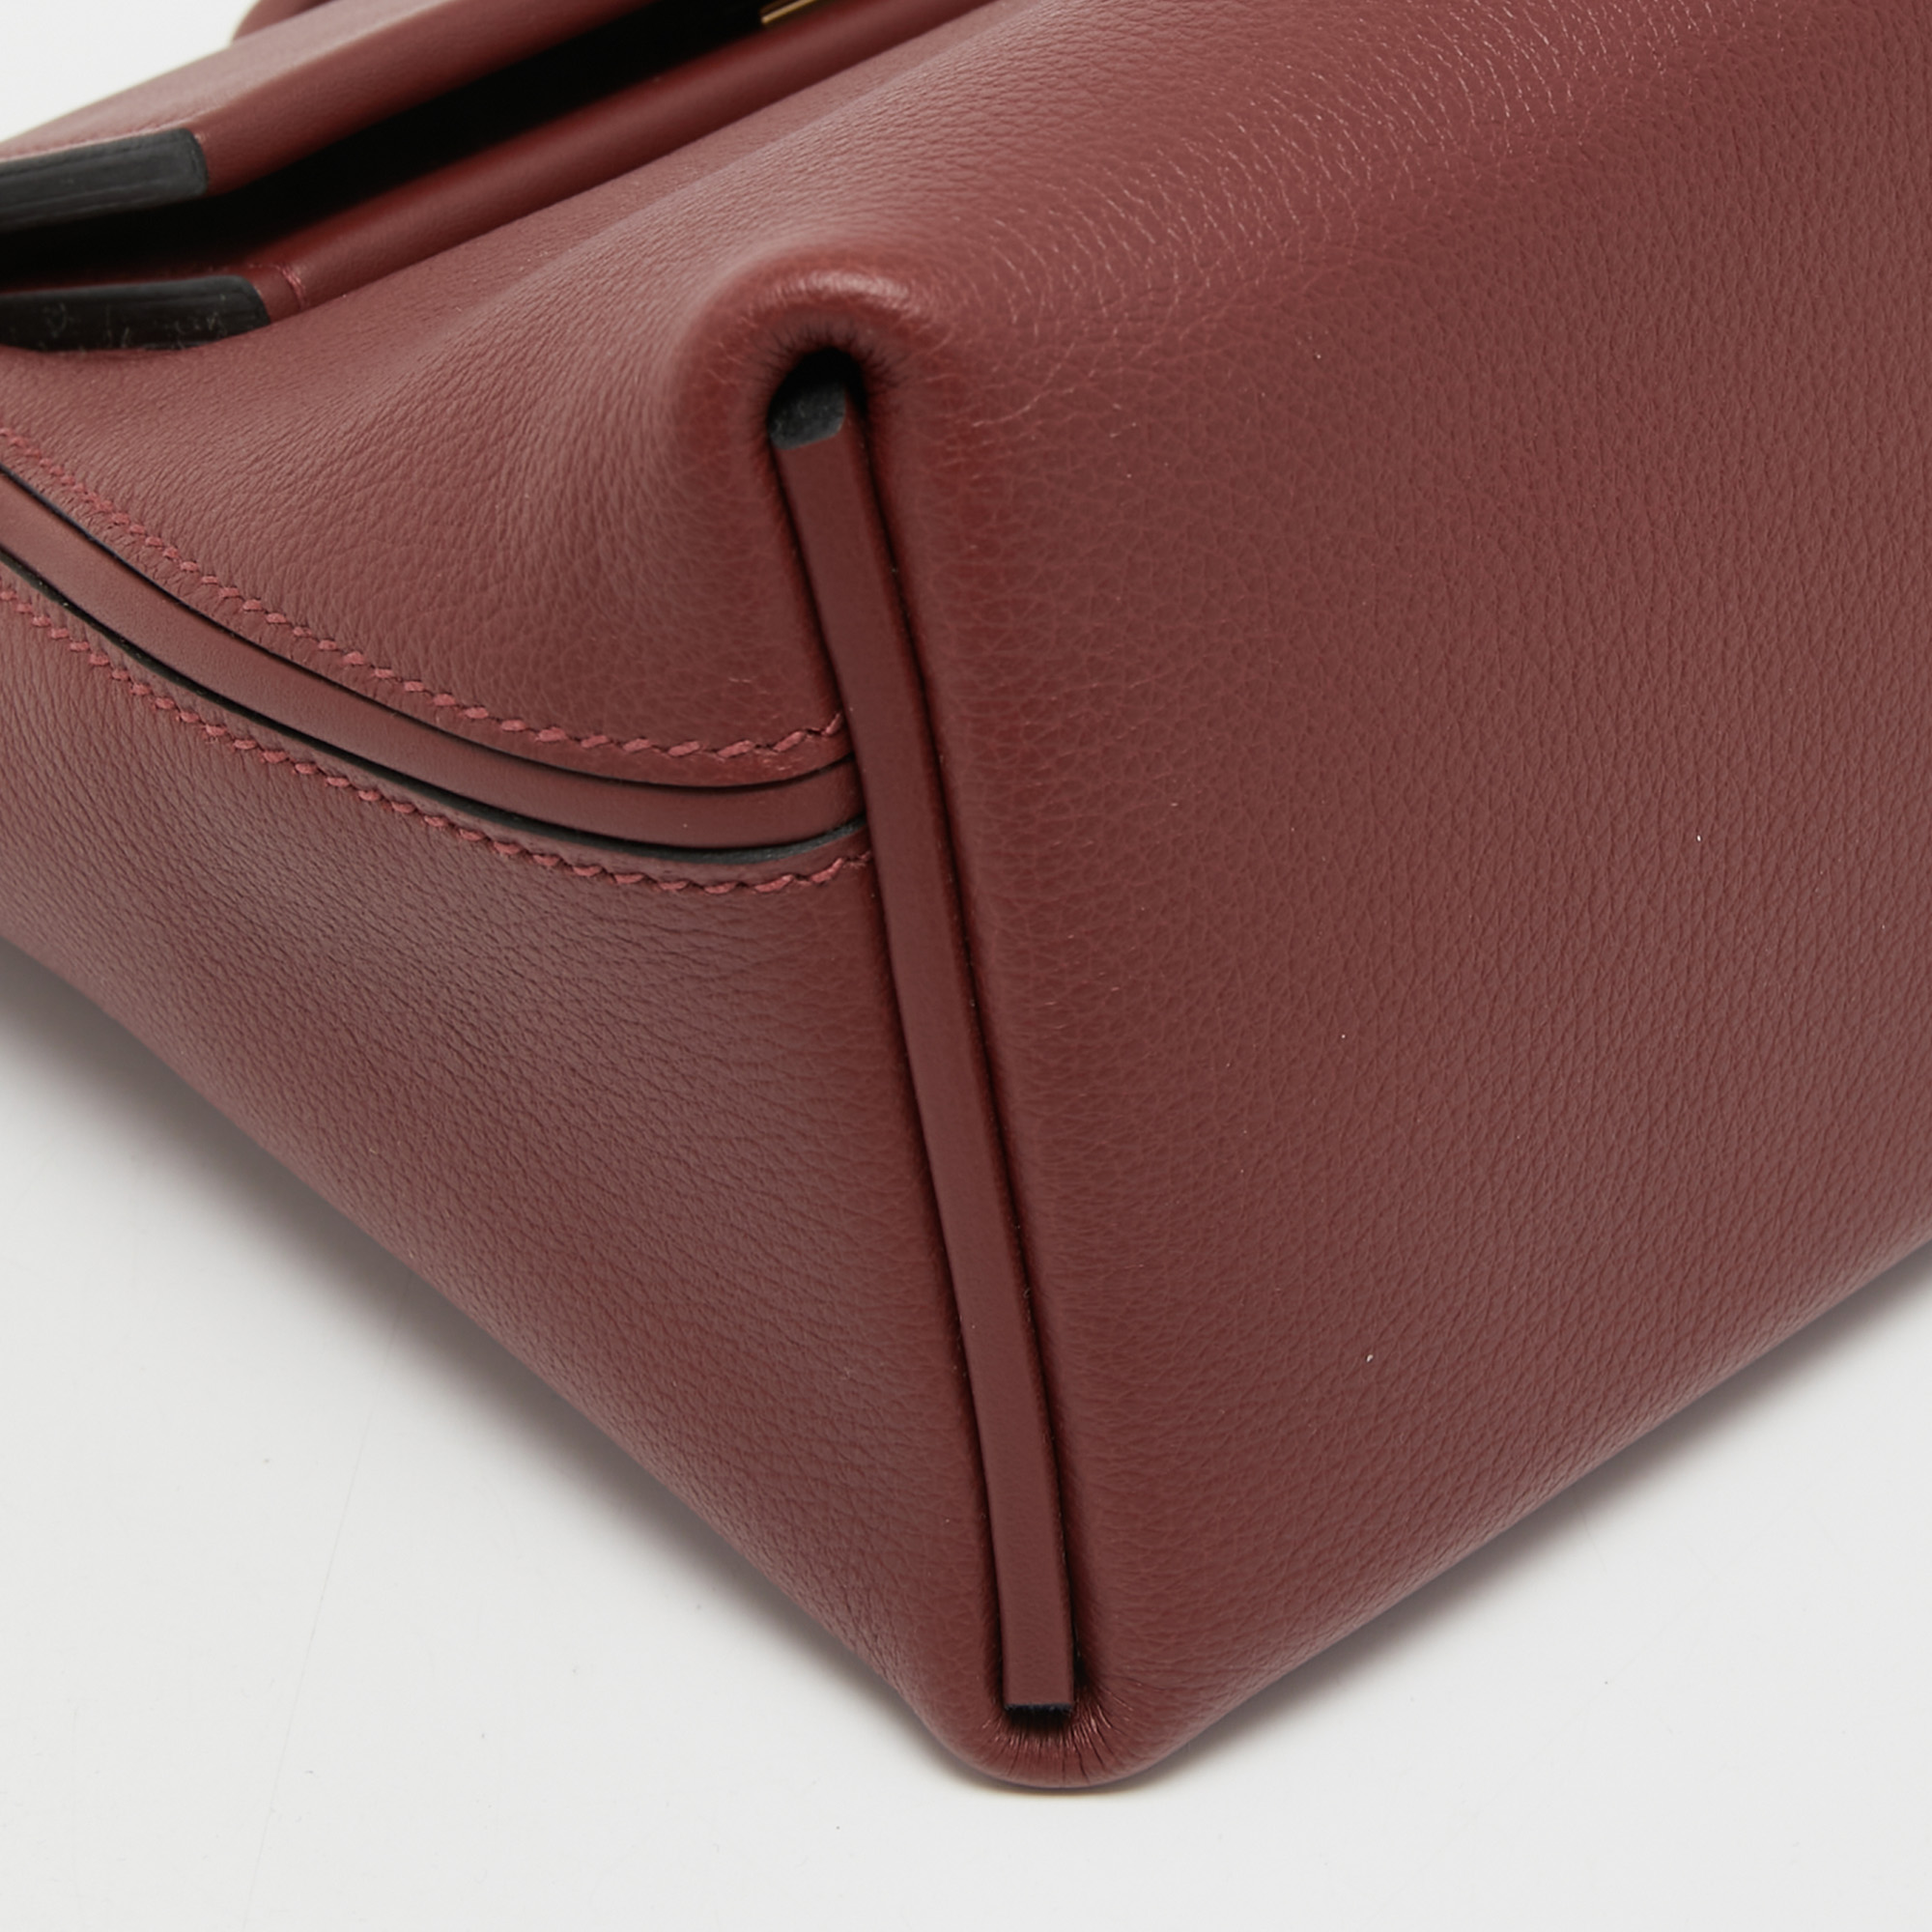 Hermès 24/24 Bordeaux Clemence and Rouge H Swift 29 Handbag